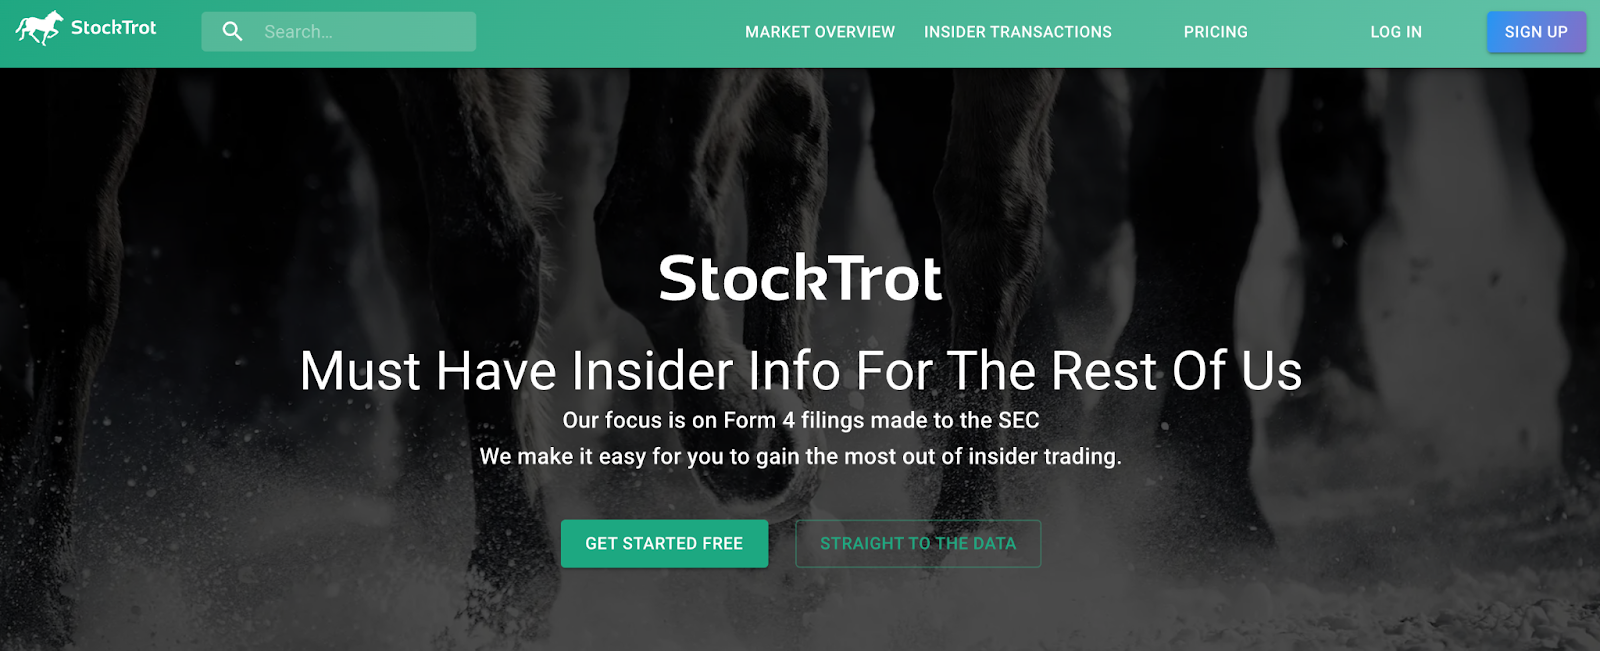 StockTrot insider transation signals